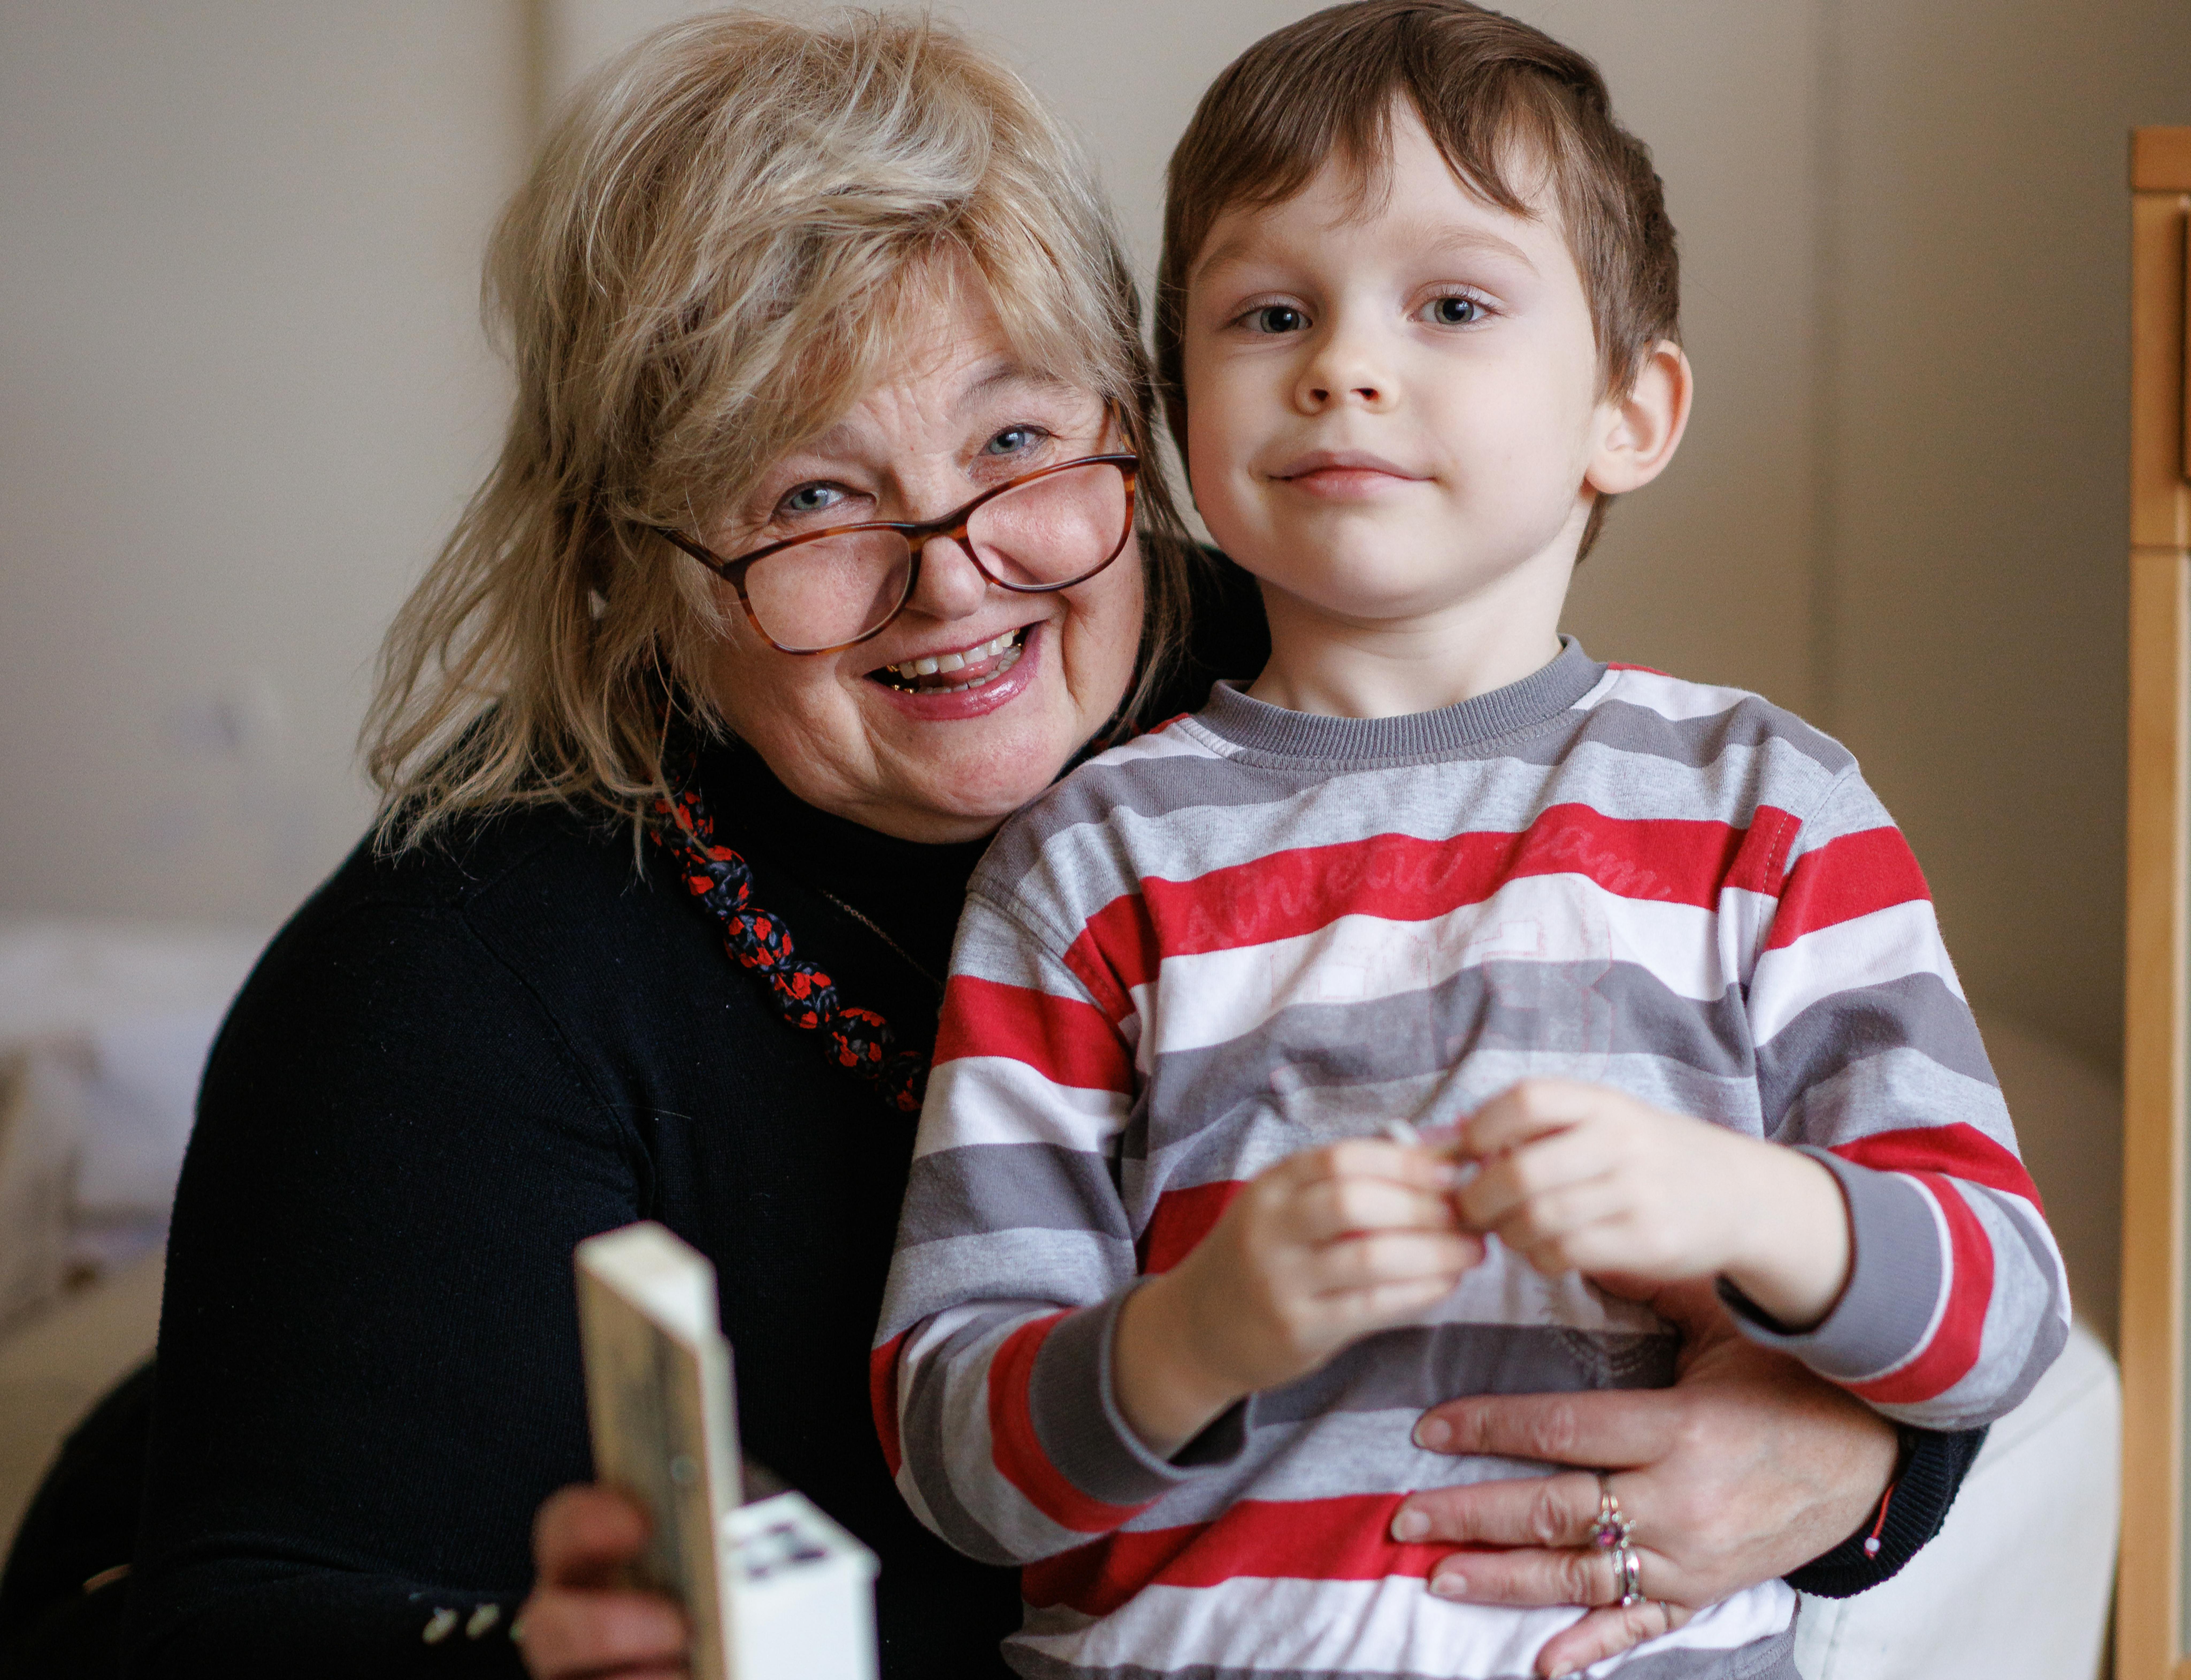 Konstantin Gerasimenko, 5 anni, e sua nonna Oksana Malakhova, da Lviv, Ucraina stanno giocando insieme in uno dei centri residenziali a Iasi, in Romania.  Qui l’UNICEF supporta i centri temporanei per bambini e famiglie rifugiati: Konstantin e la sua famiglia hanno ricevuto aiuti primari, nonché supporto per la salute mentale da uno psicologo professionista.